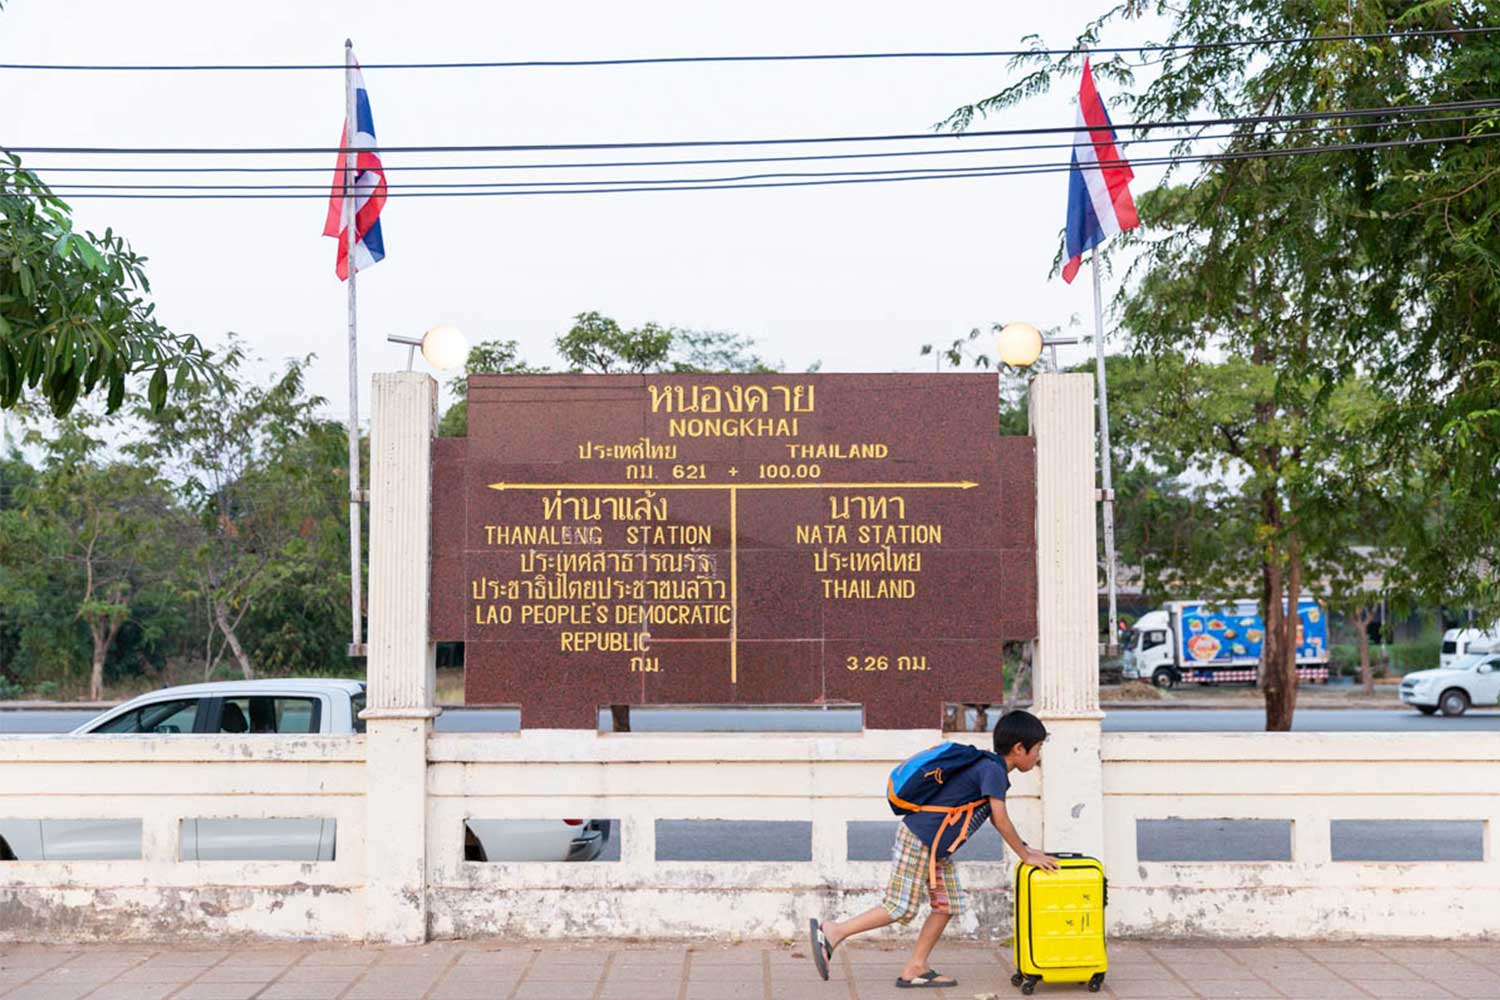 タイ国境にあるノーンカーイ駅の長いホームの上を自分で荷物を押して歩く姿に成長を感じる。